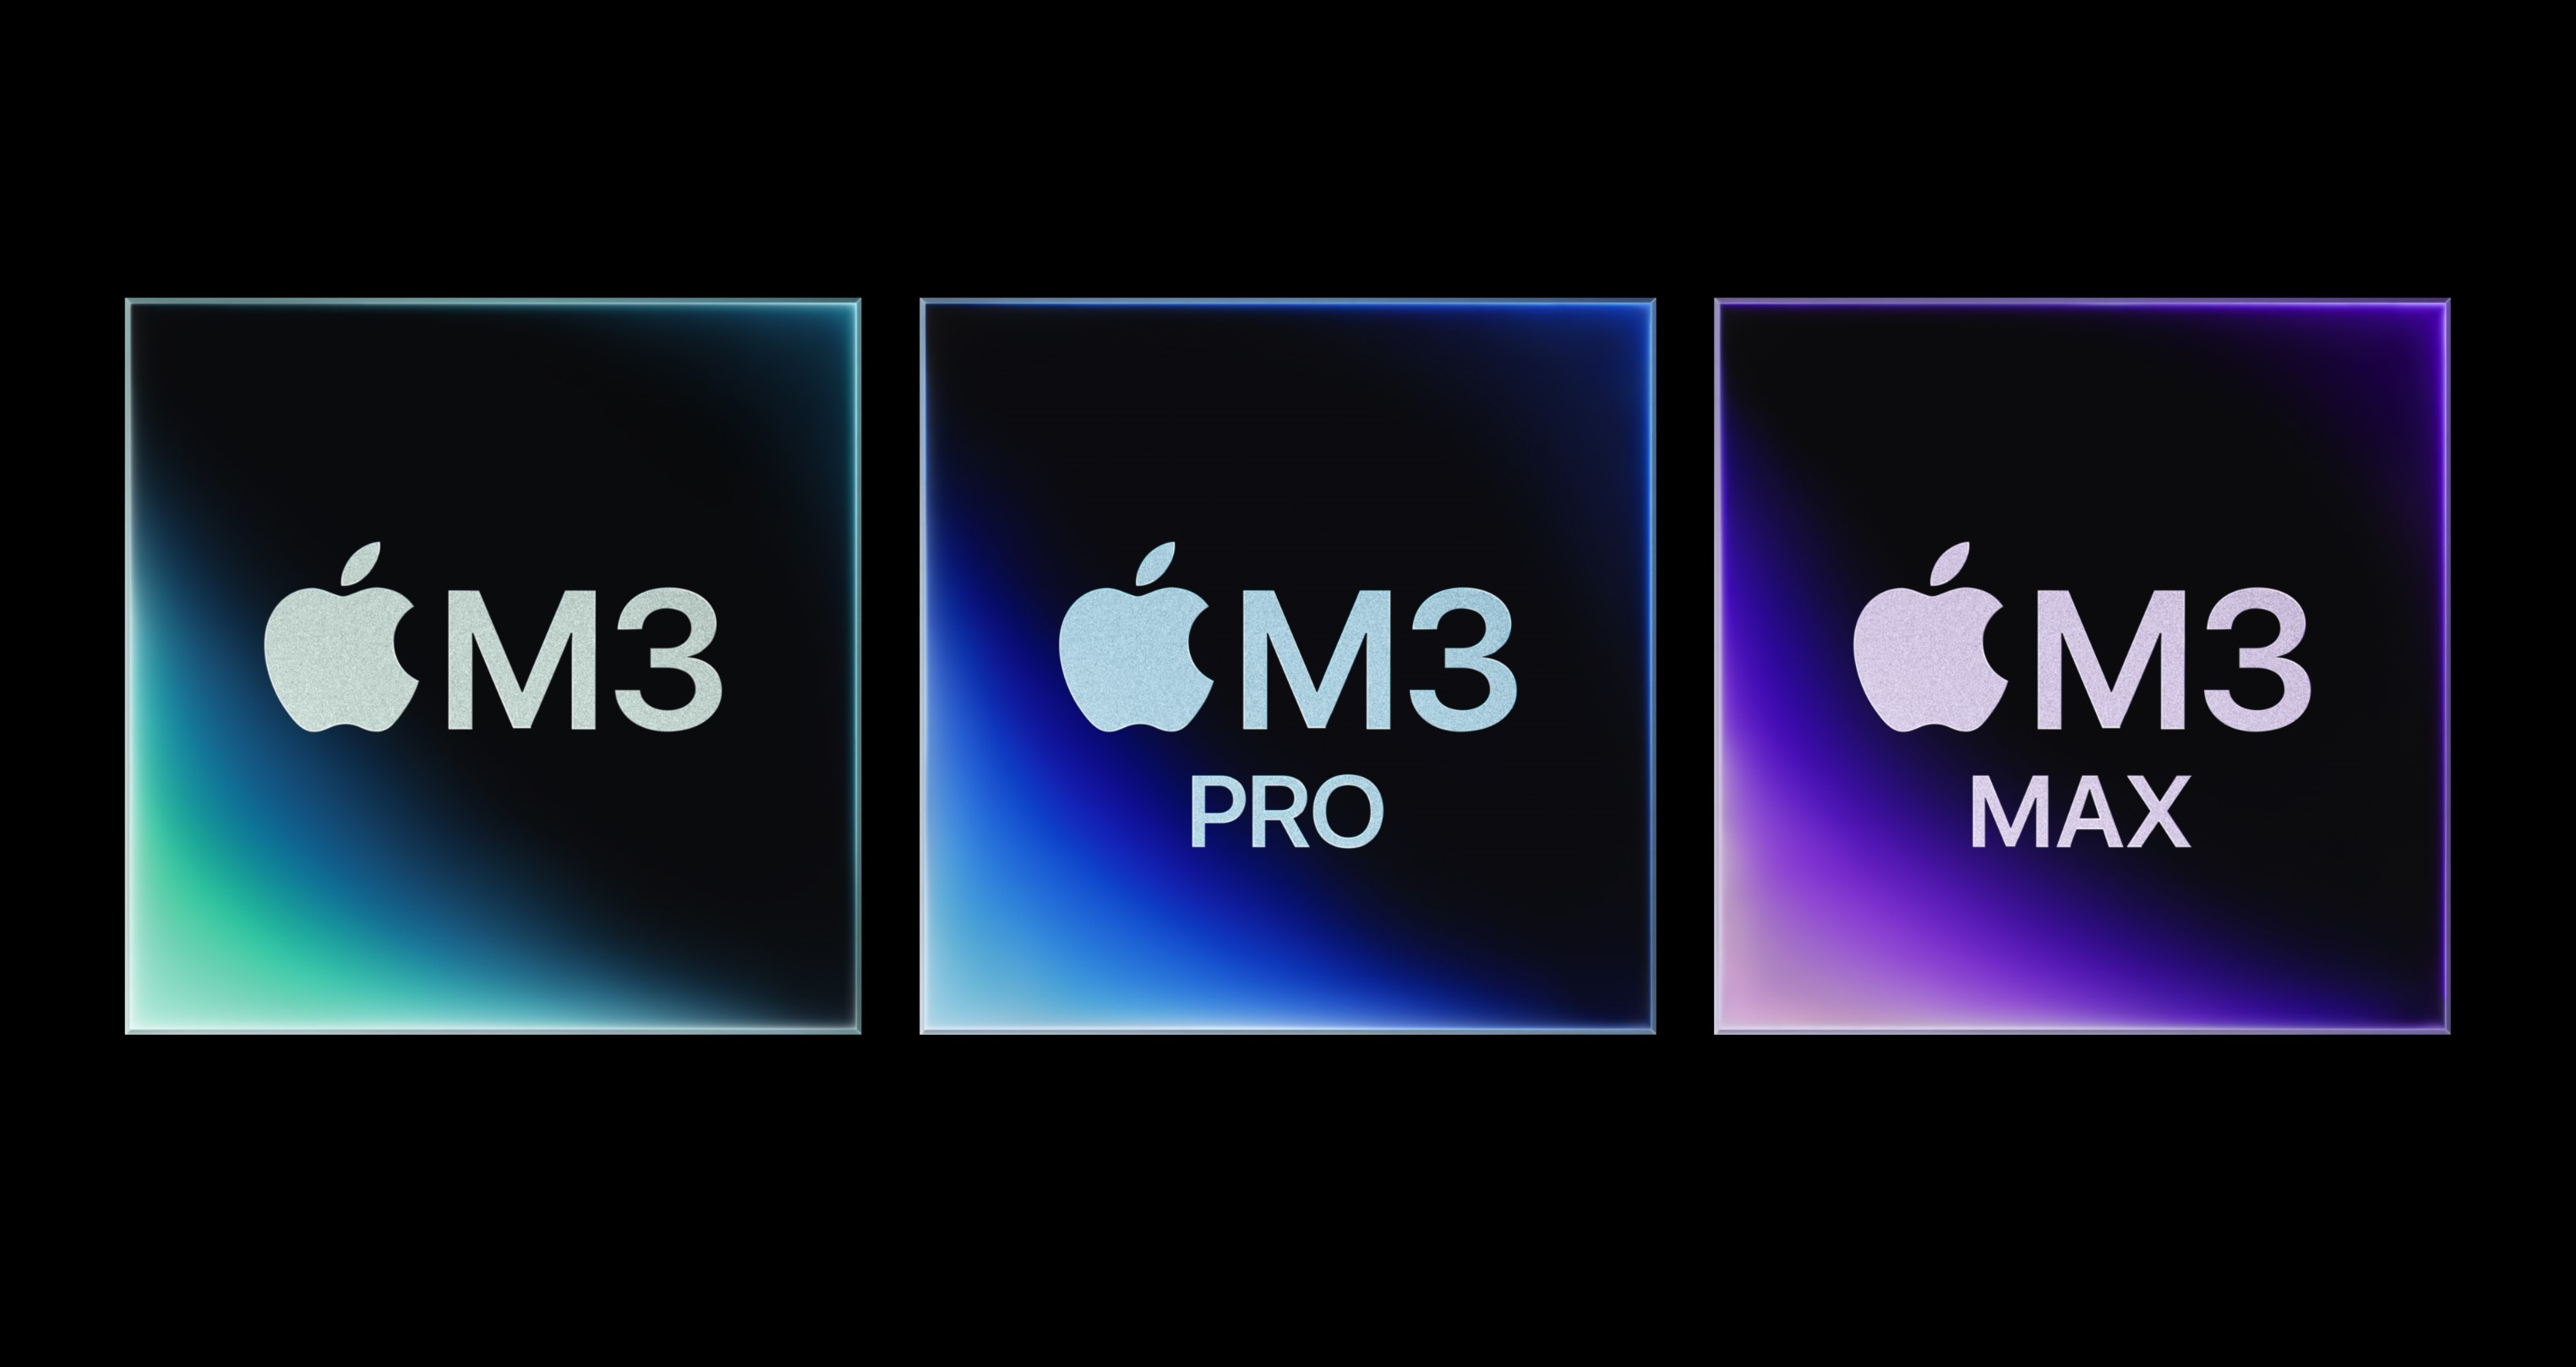 苹果公司的“恐怖快速”活动推出了100%回收材料制成的iMac M3，包括铝